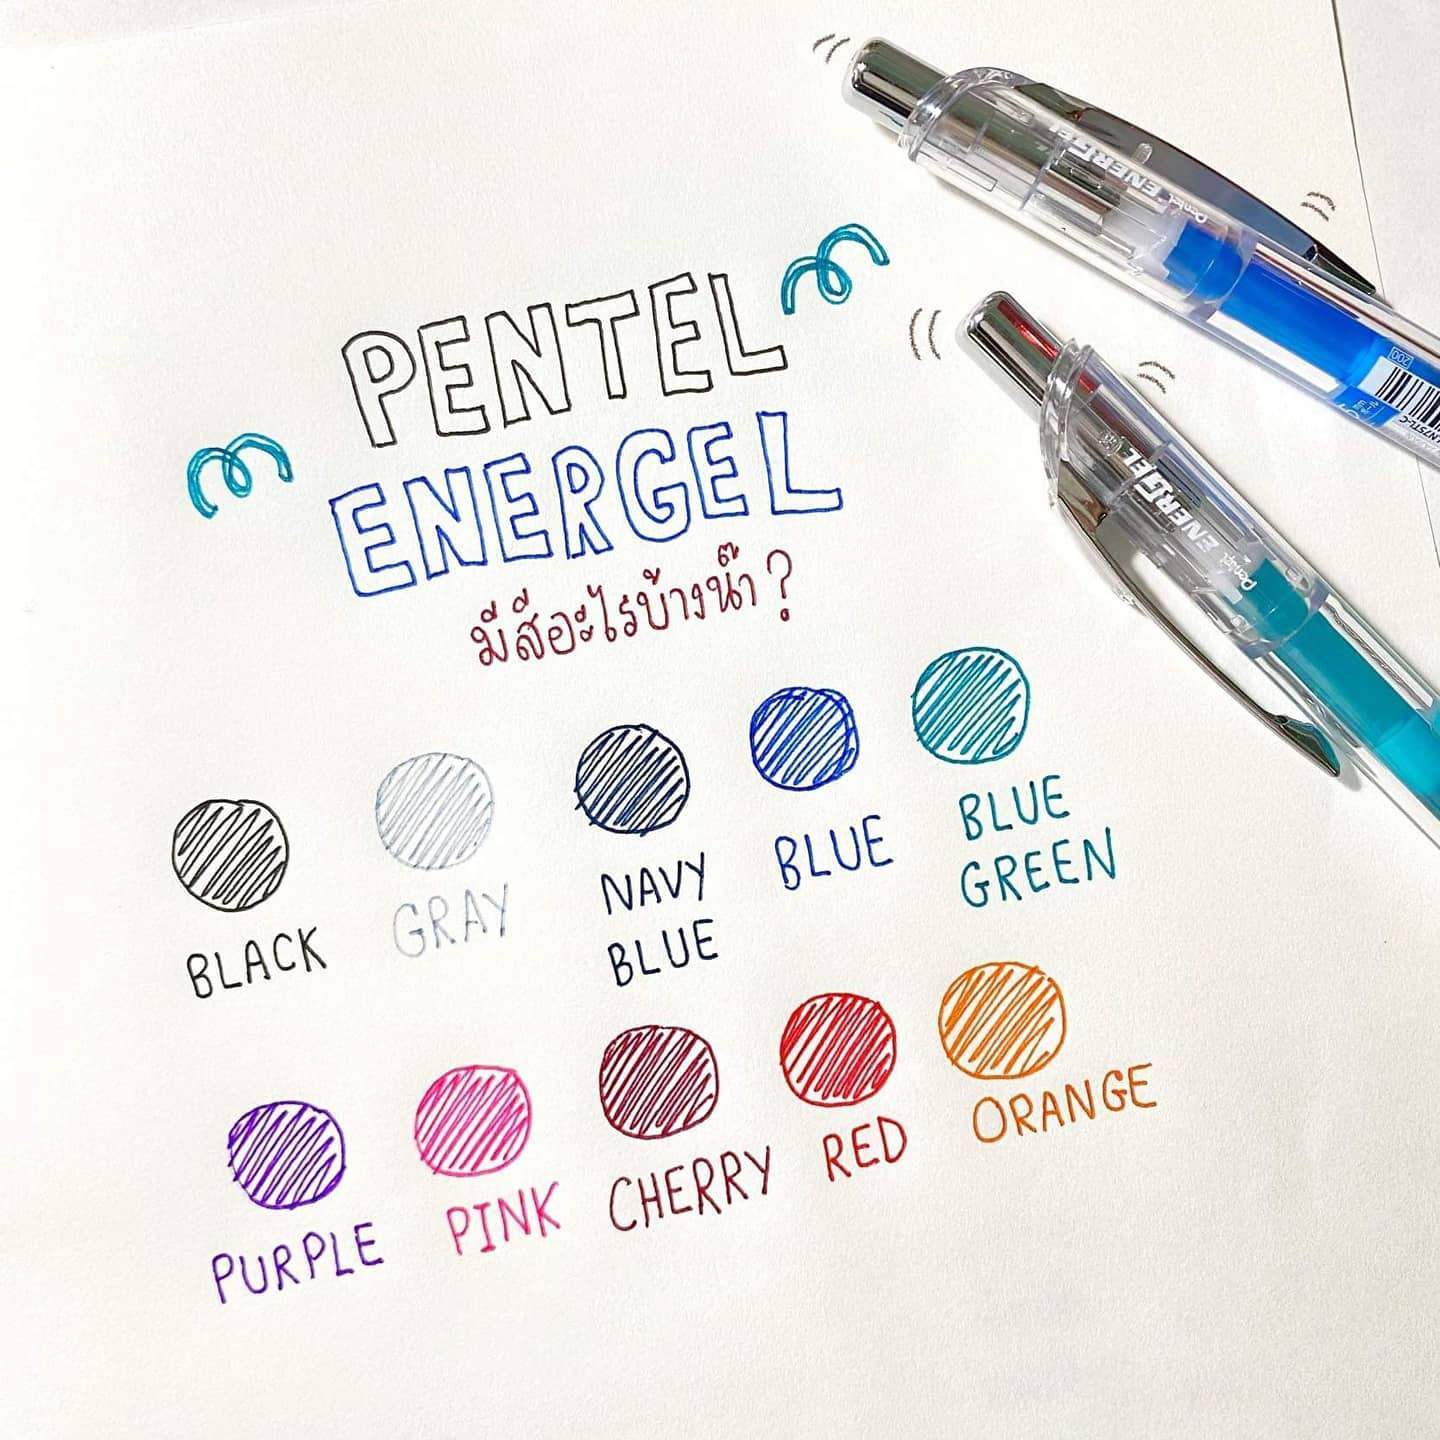 Hình ảnh Bút gel Pentel Energel Infree thân trong BLN75TL, 10 màu sắc đa dạng (ngòi 0.5mm)| SIÊU MƯỢT- NHANH KHÔ NHẤT